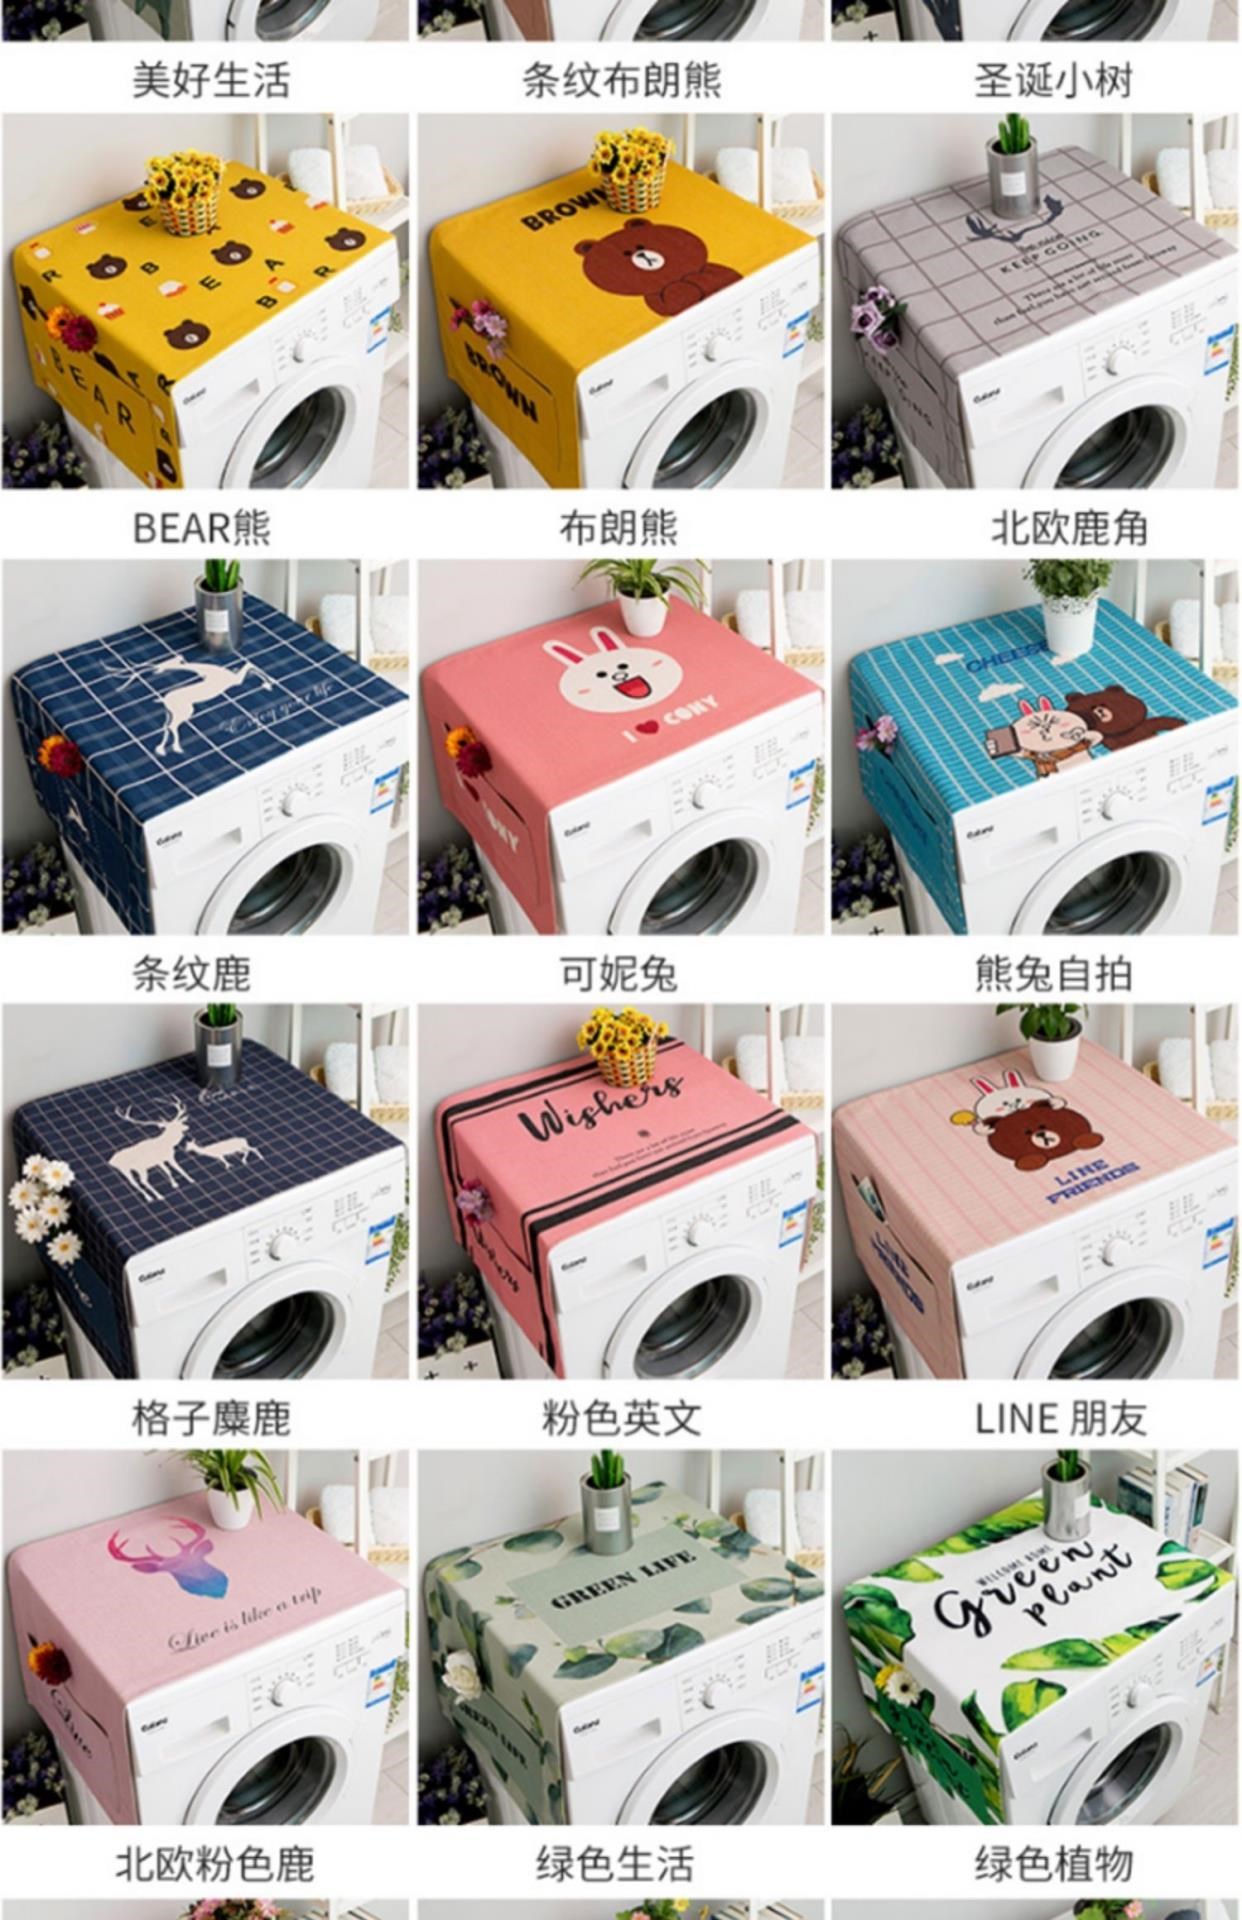 Máy giặt, tủ lạnh, trang trí trên cùng, cửa đôi, cửa đơn, nắp bảo vệ, nắp che bụi, nắp che bụi, phong cách Hàn Quốc - Bảo vệ bụi